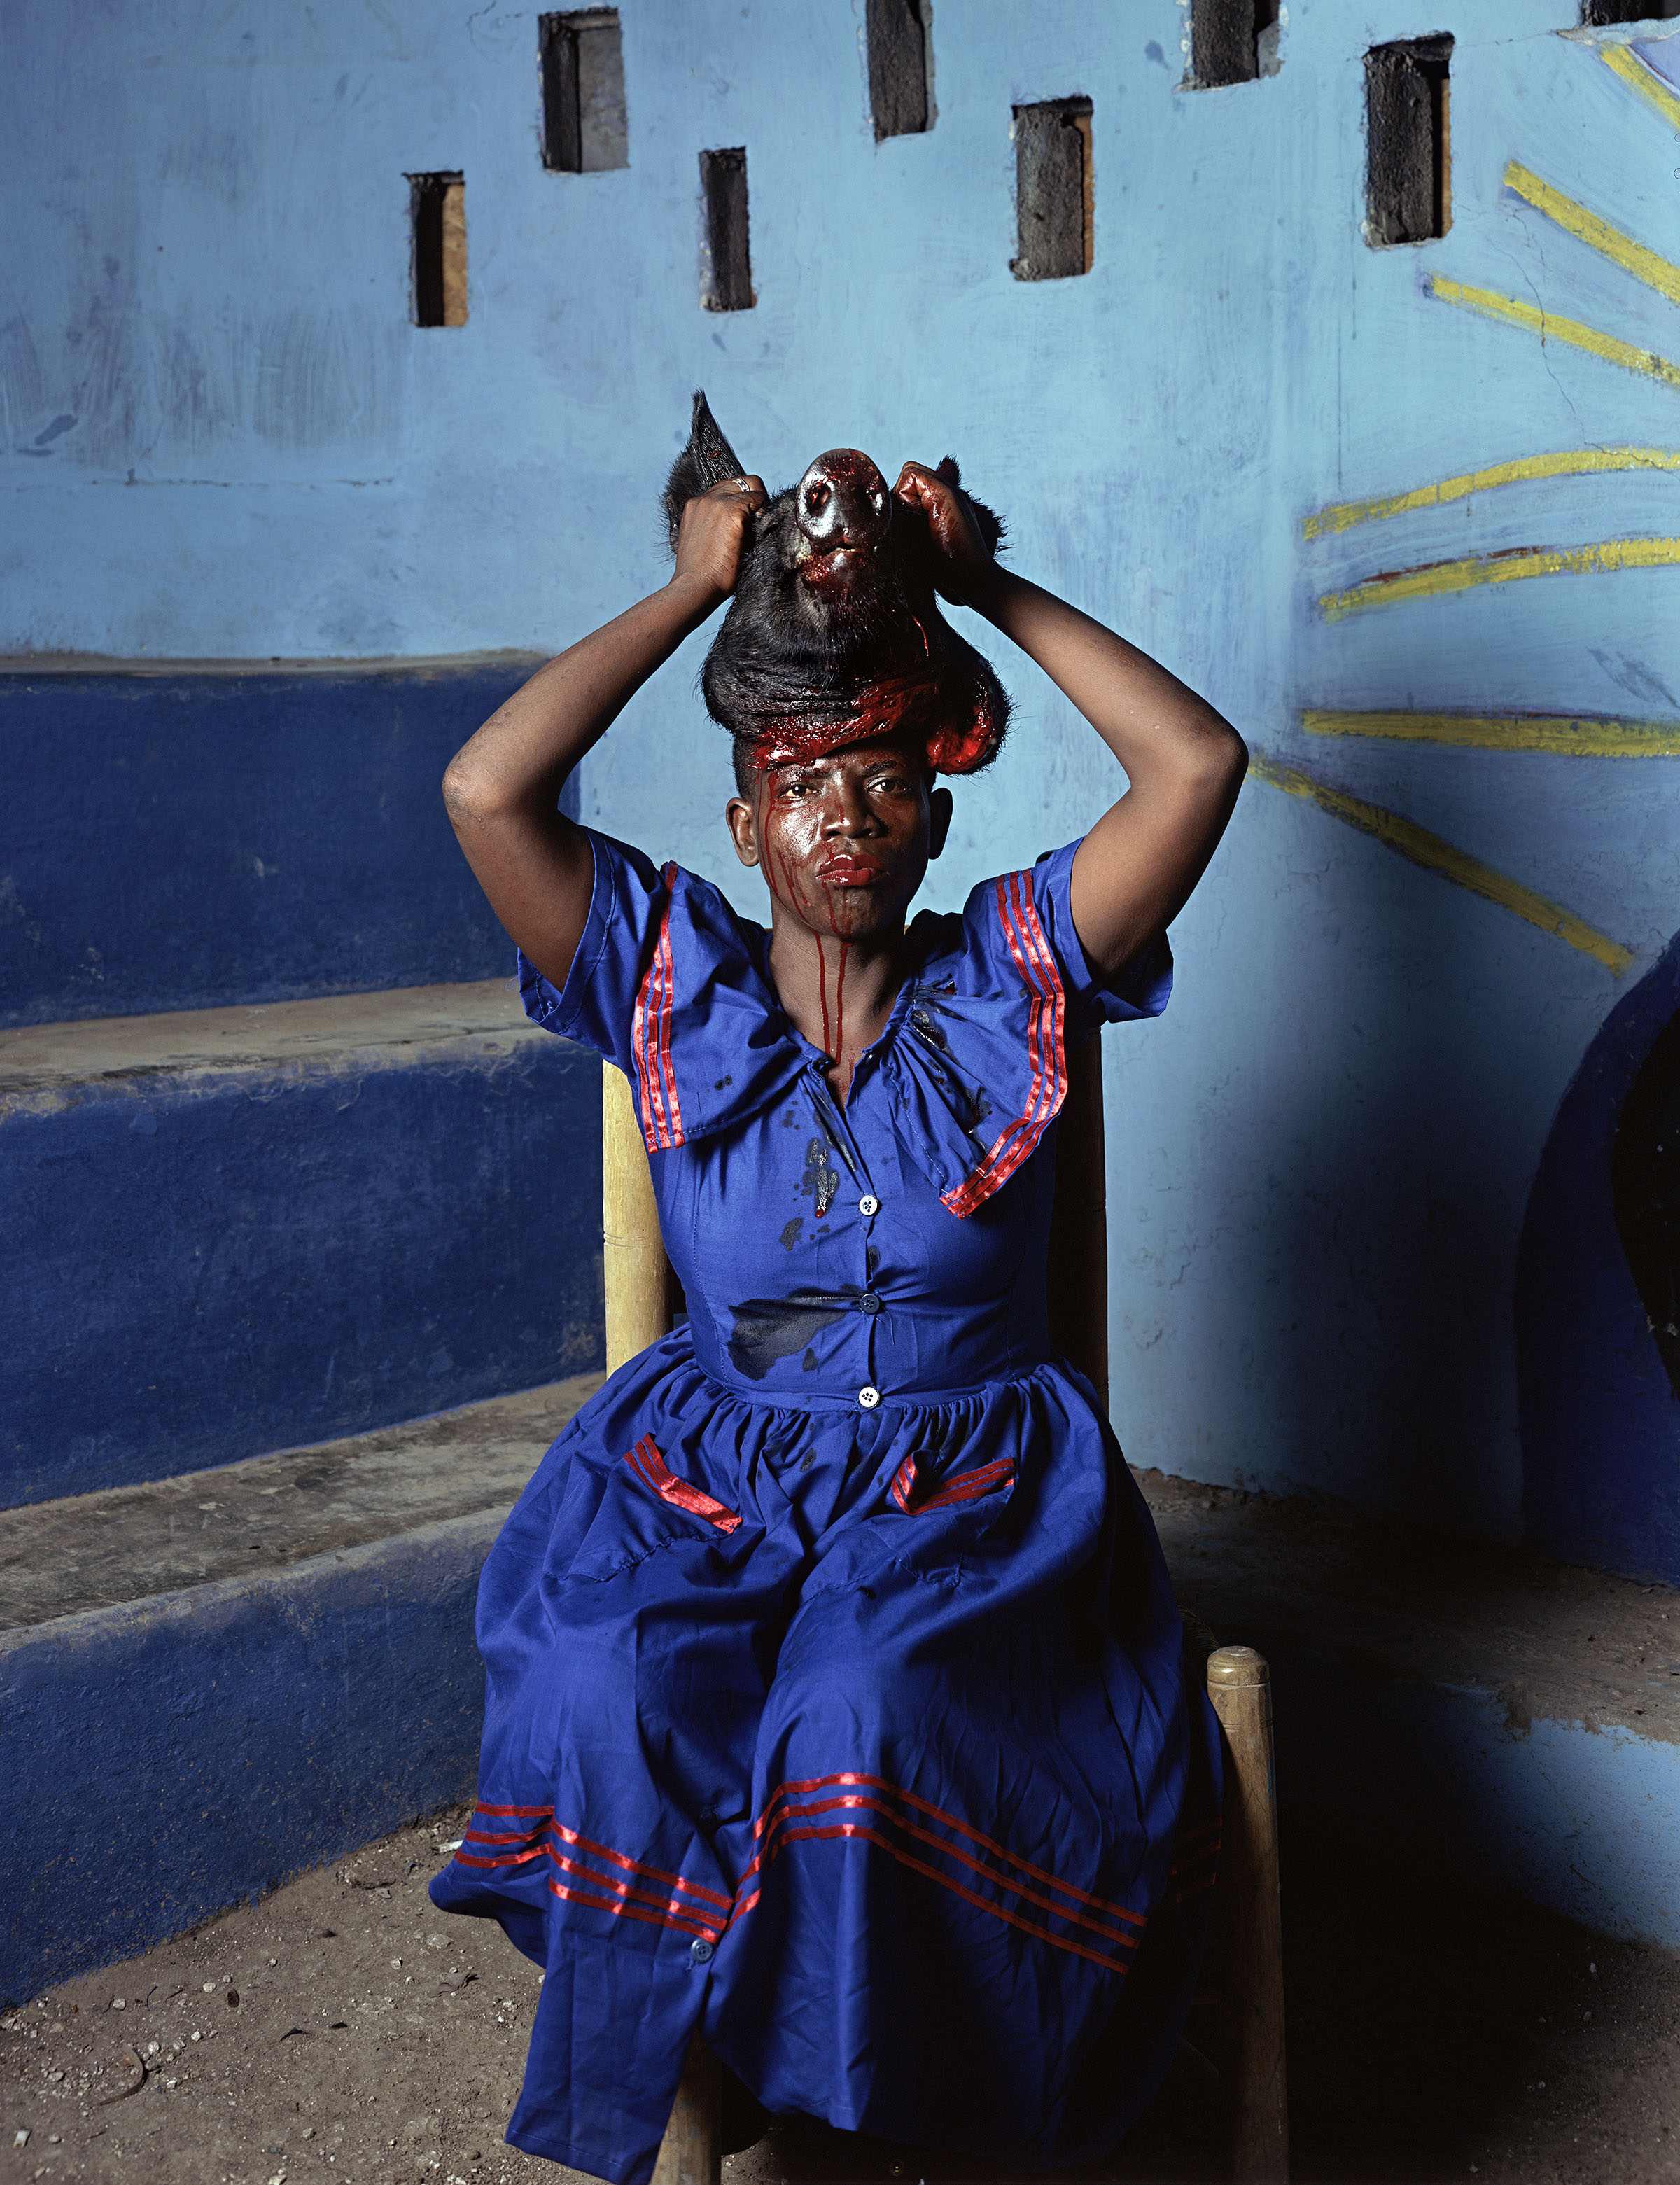 Deana Lawson. As Above So Below, Port-au-Prince, Haiti, 2013. © Deana Lawson. Courtesy of Rhona Hoffman Gallery, Chicago.